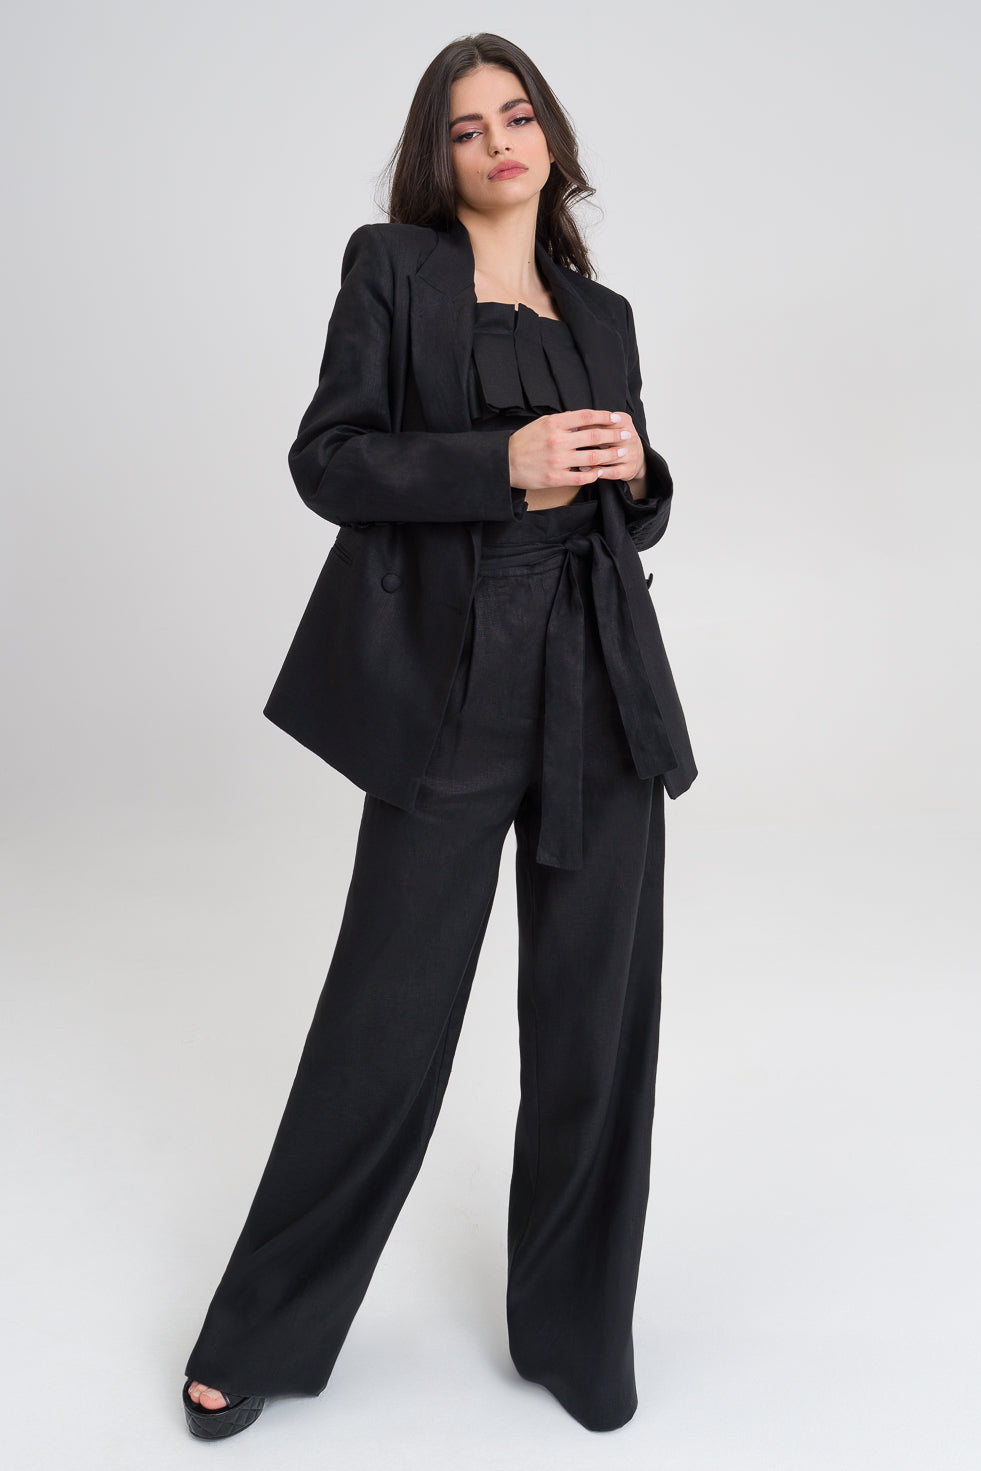 Black Linen Suit, Women Suit, Pants Suit, Linen Suit Women, Black Linen  Blazer and Pants Suit 